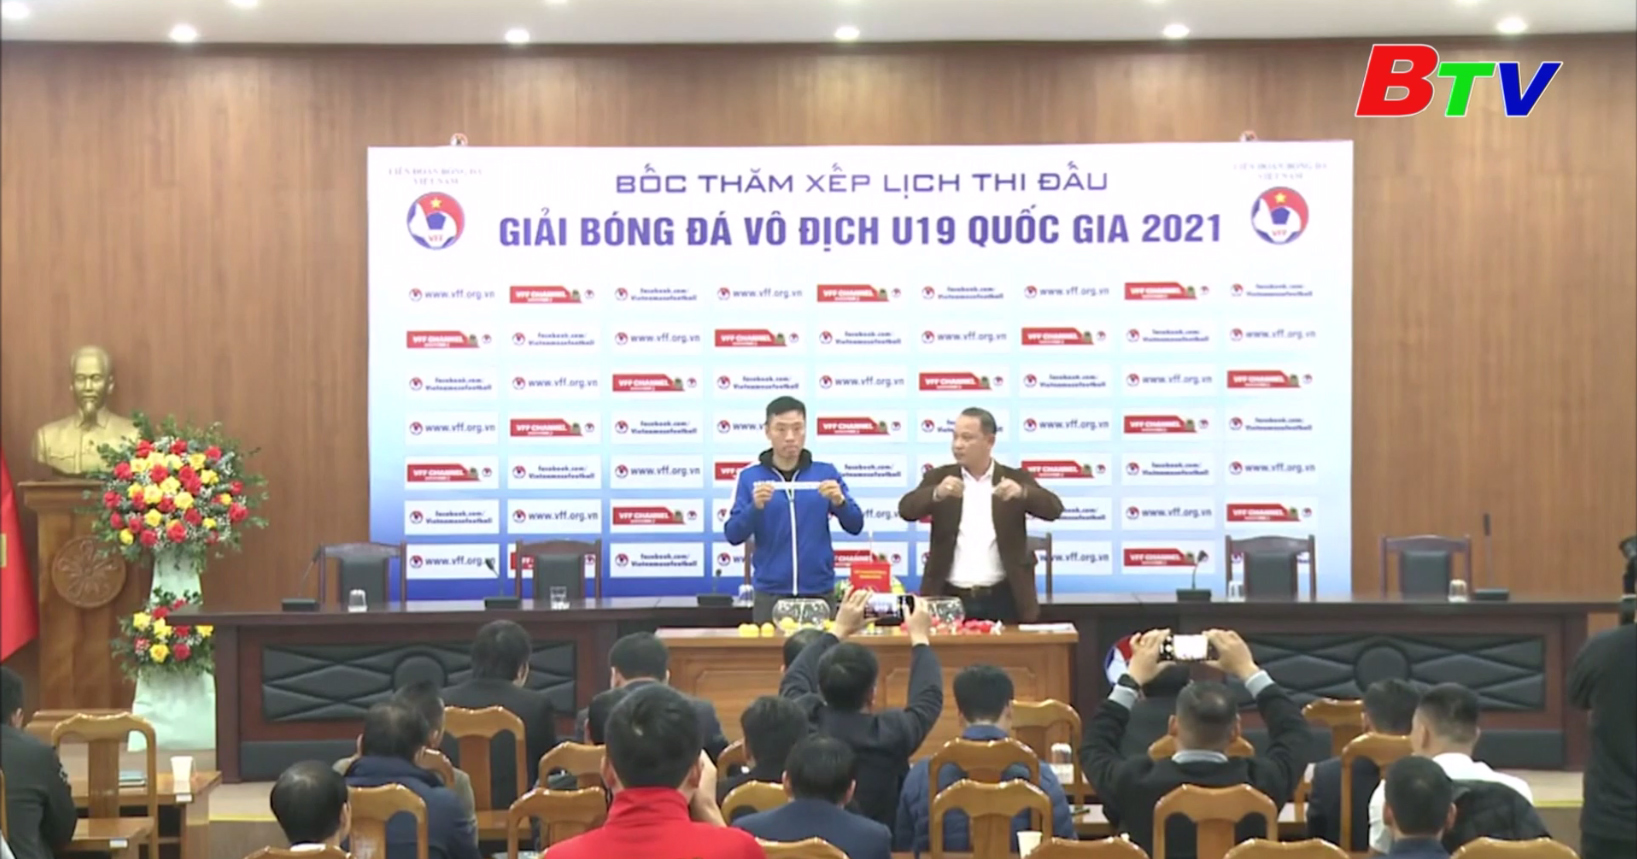 Vòng loại Giải bóng đá Vô địch U19 nam Quốc gia 2021 diễn ra từ ngày 10 tháng 1